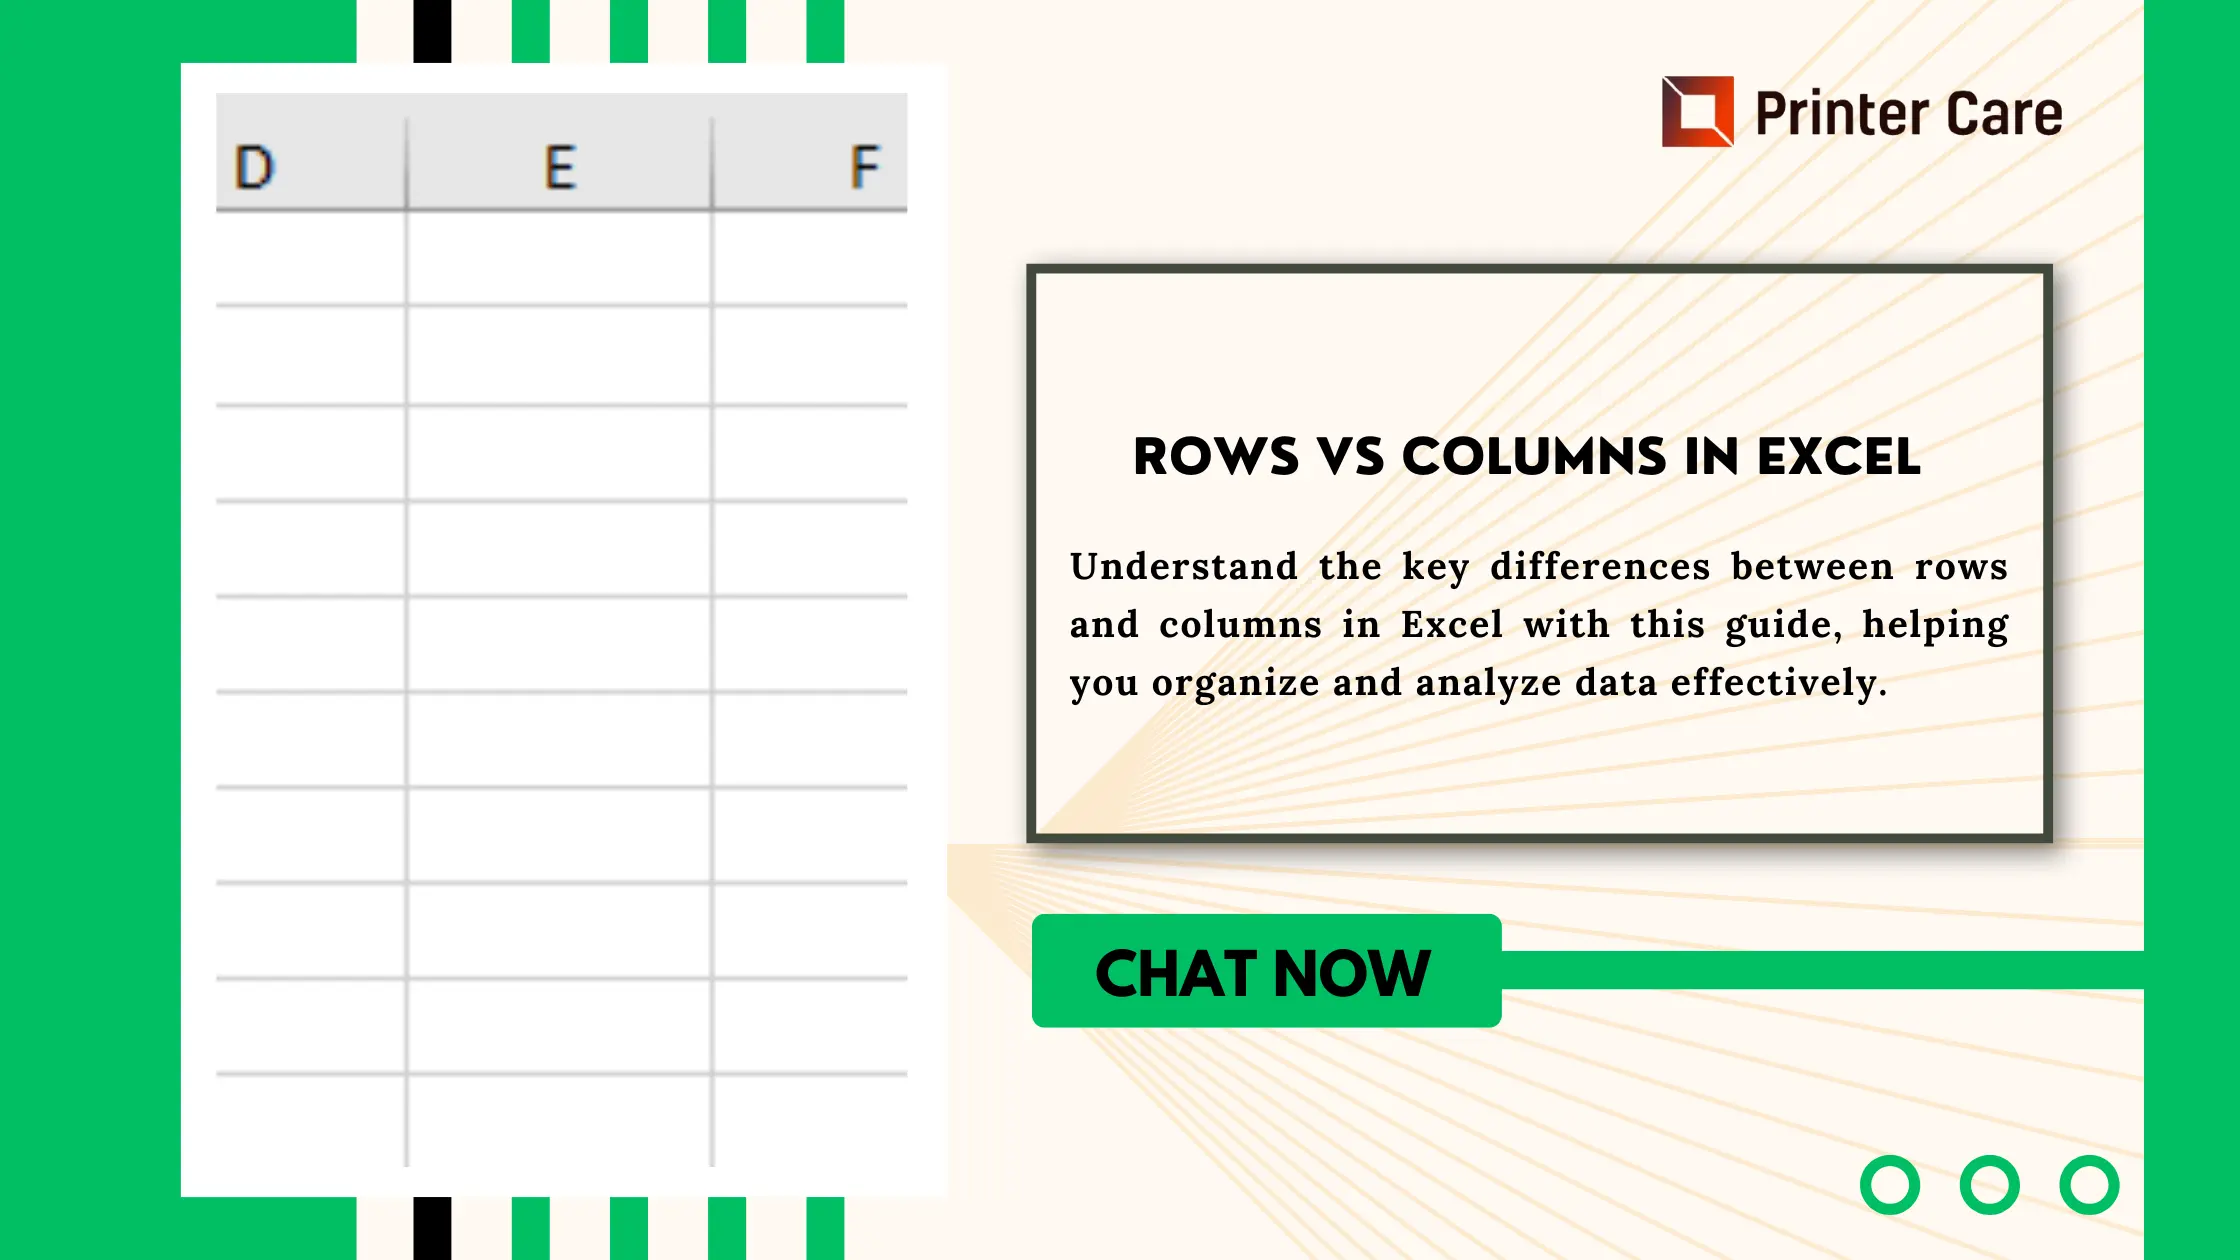 Rows vs Columns in Excel